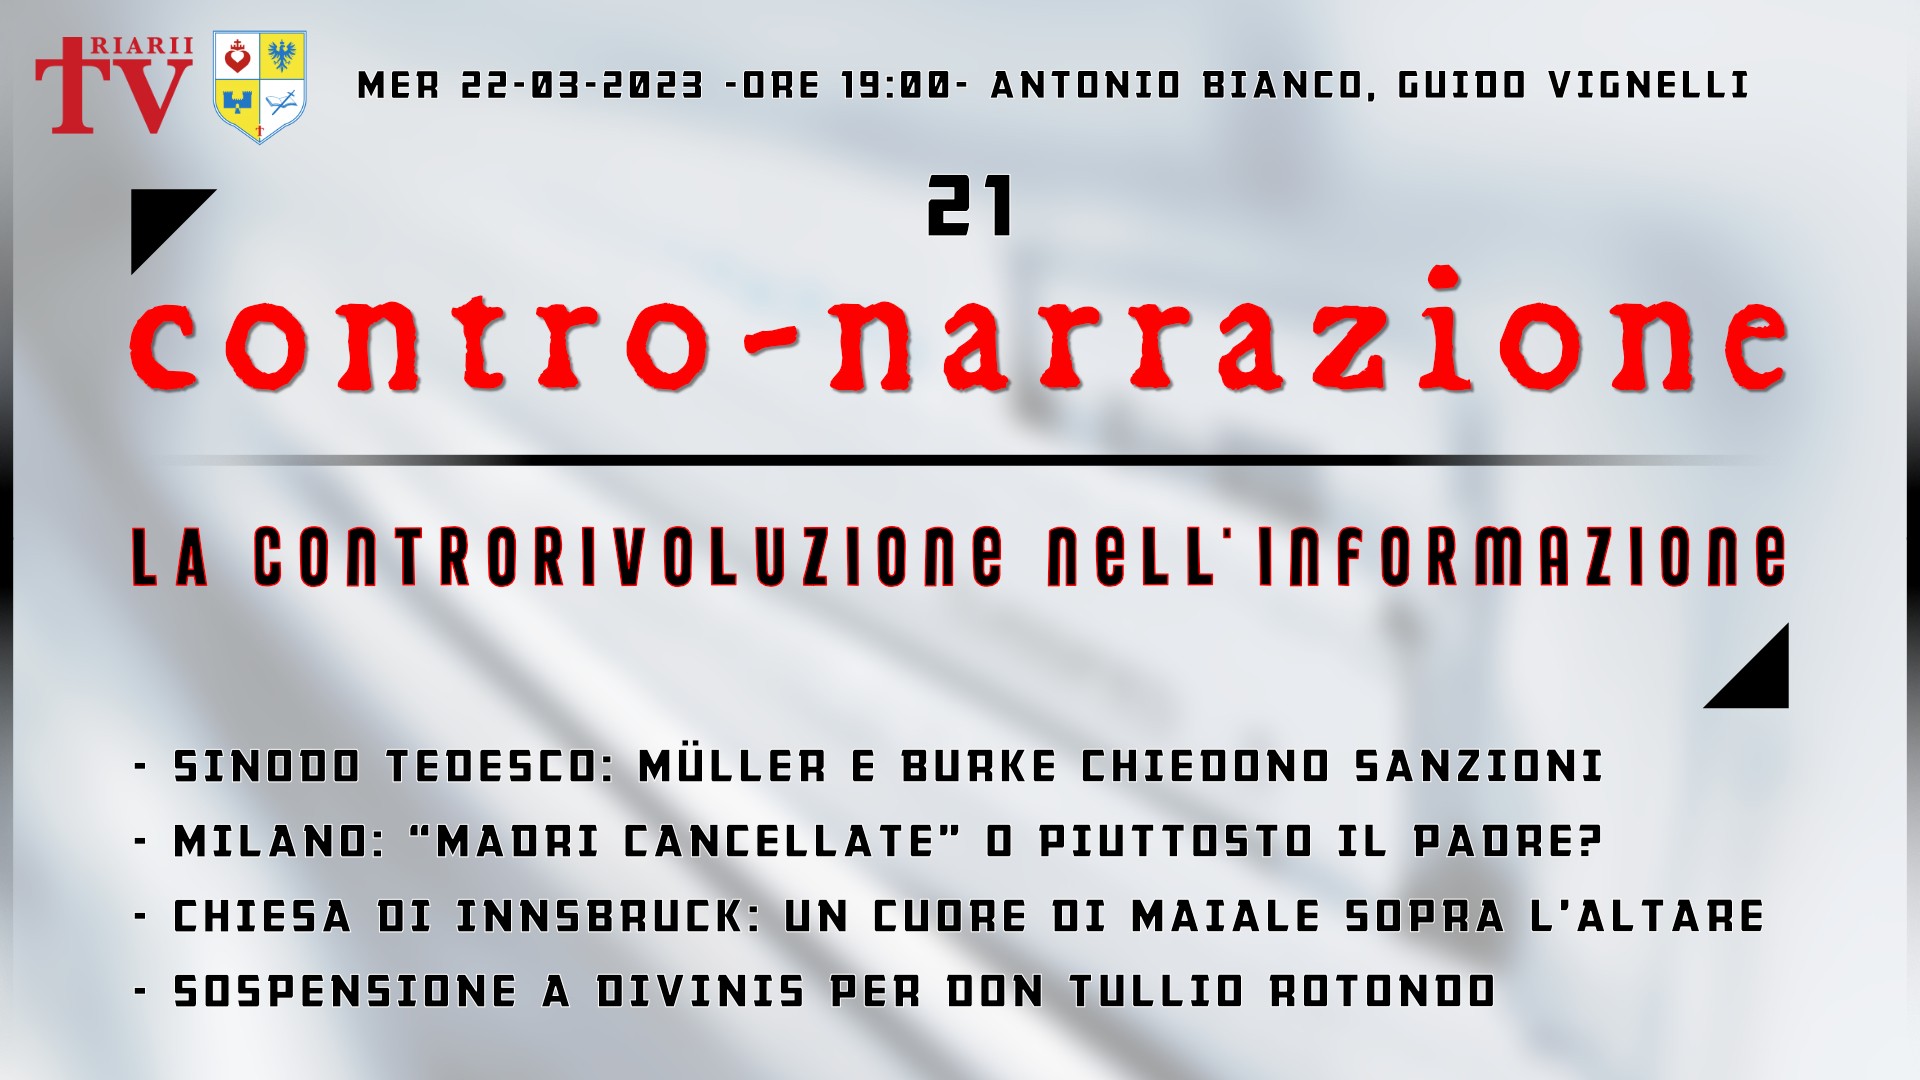 CONTRO-NARRAZIONE NR.21 - MERCOLEDÌ 21 MARZO 2023 - Antonio Bianco, Guido Vignelli